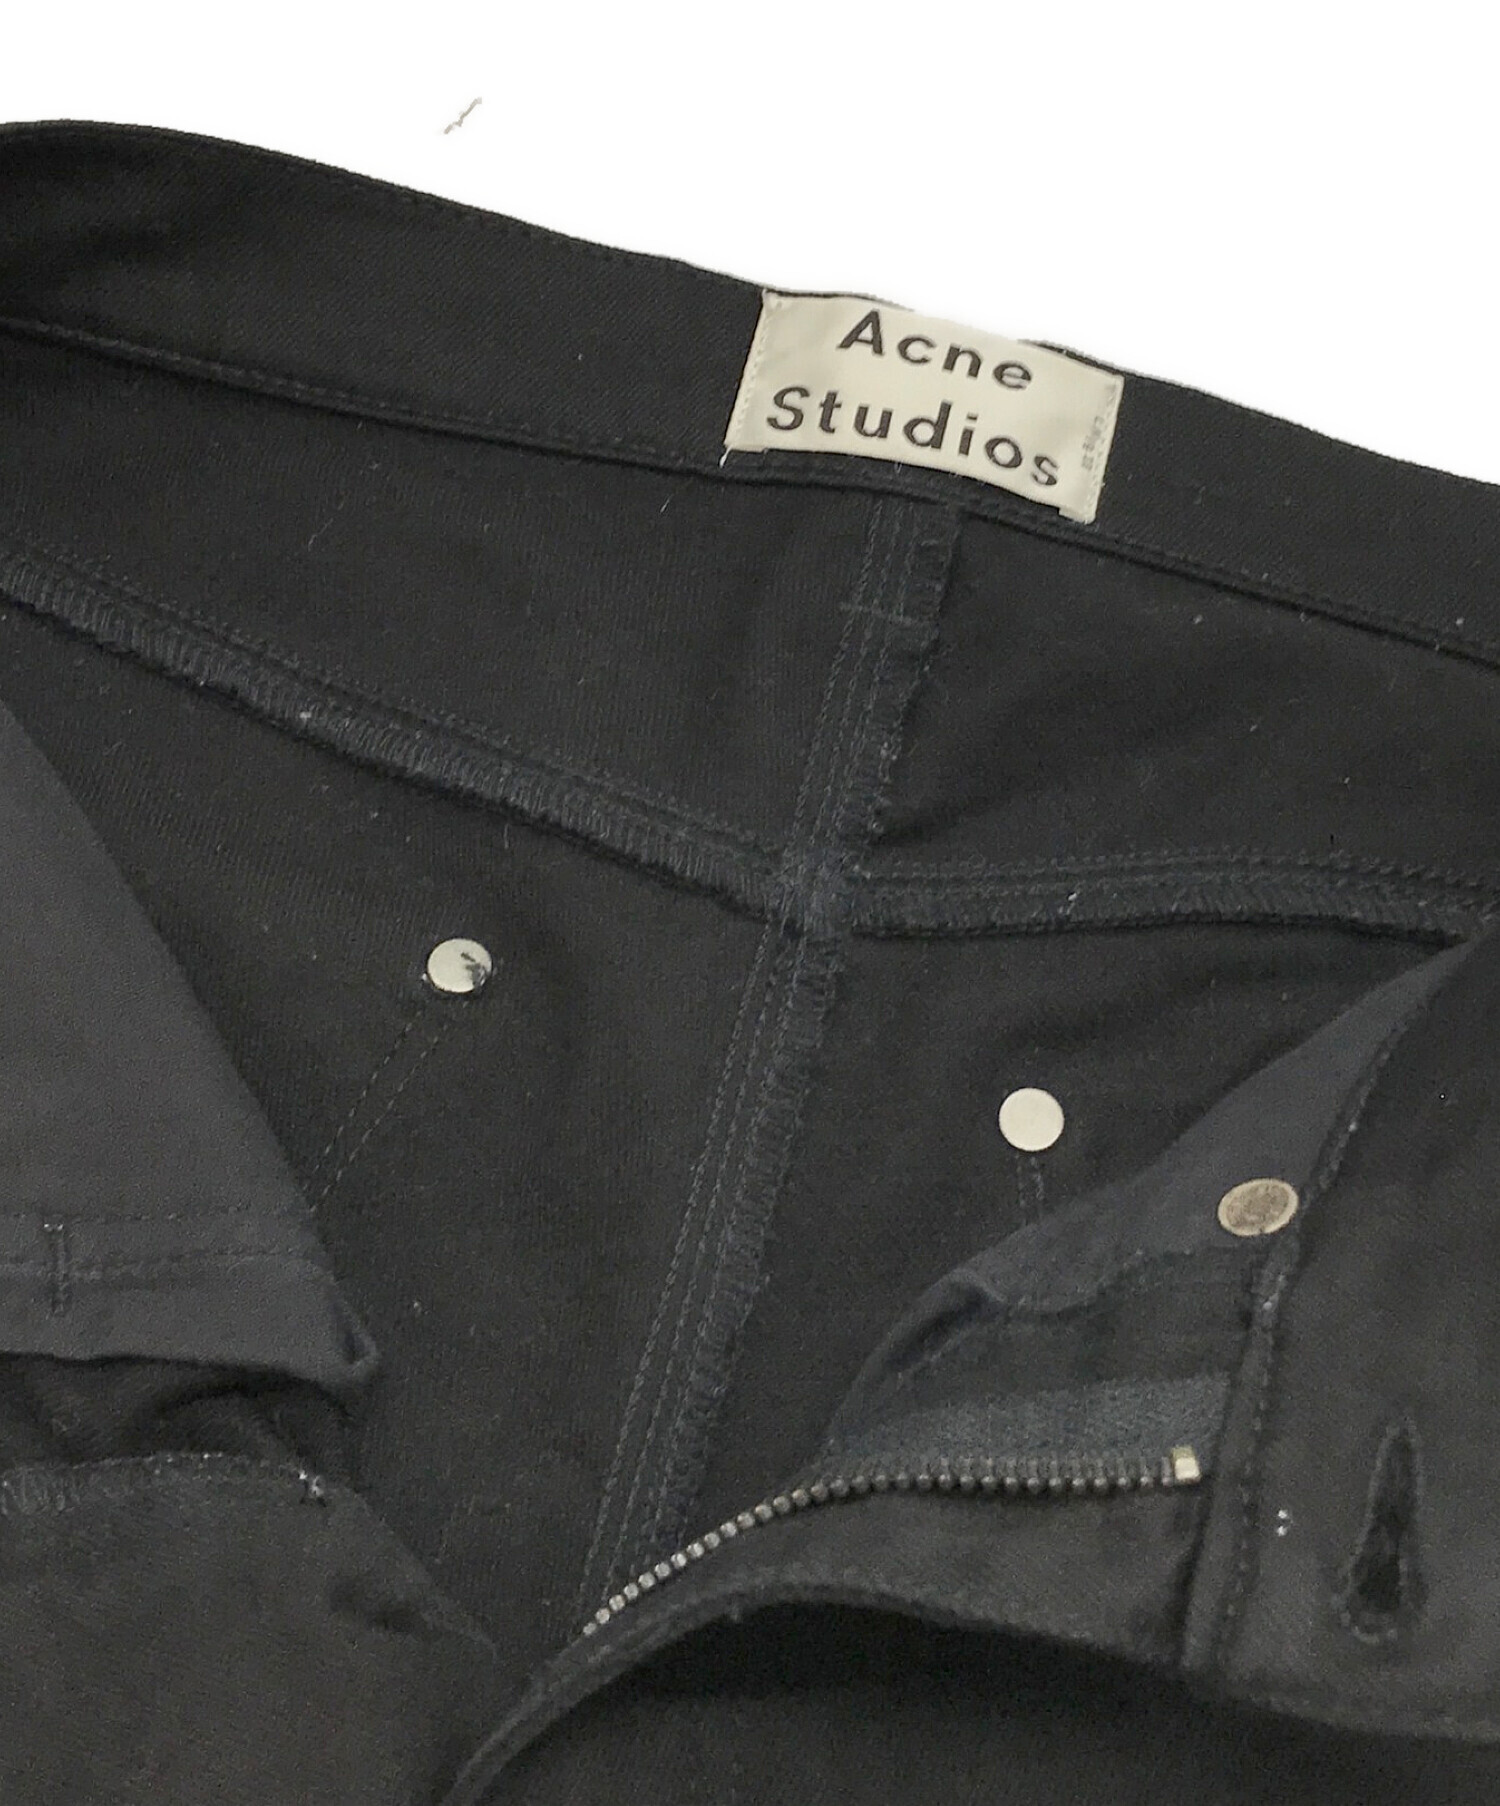 Acne studios (アクネストゥディオズ) スキニーパンツ ブラック サイズ:SIZE 28/32